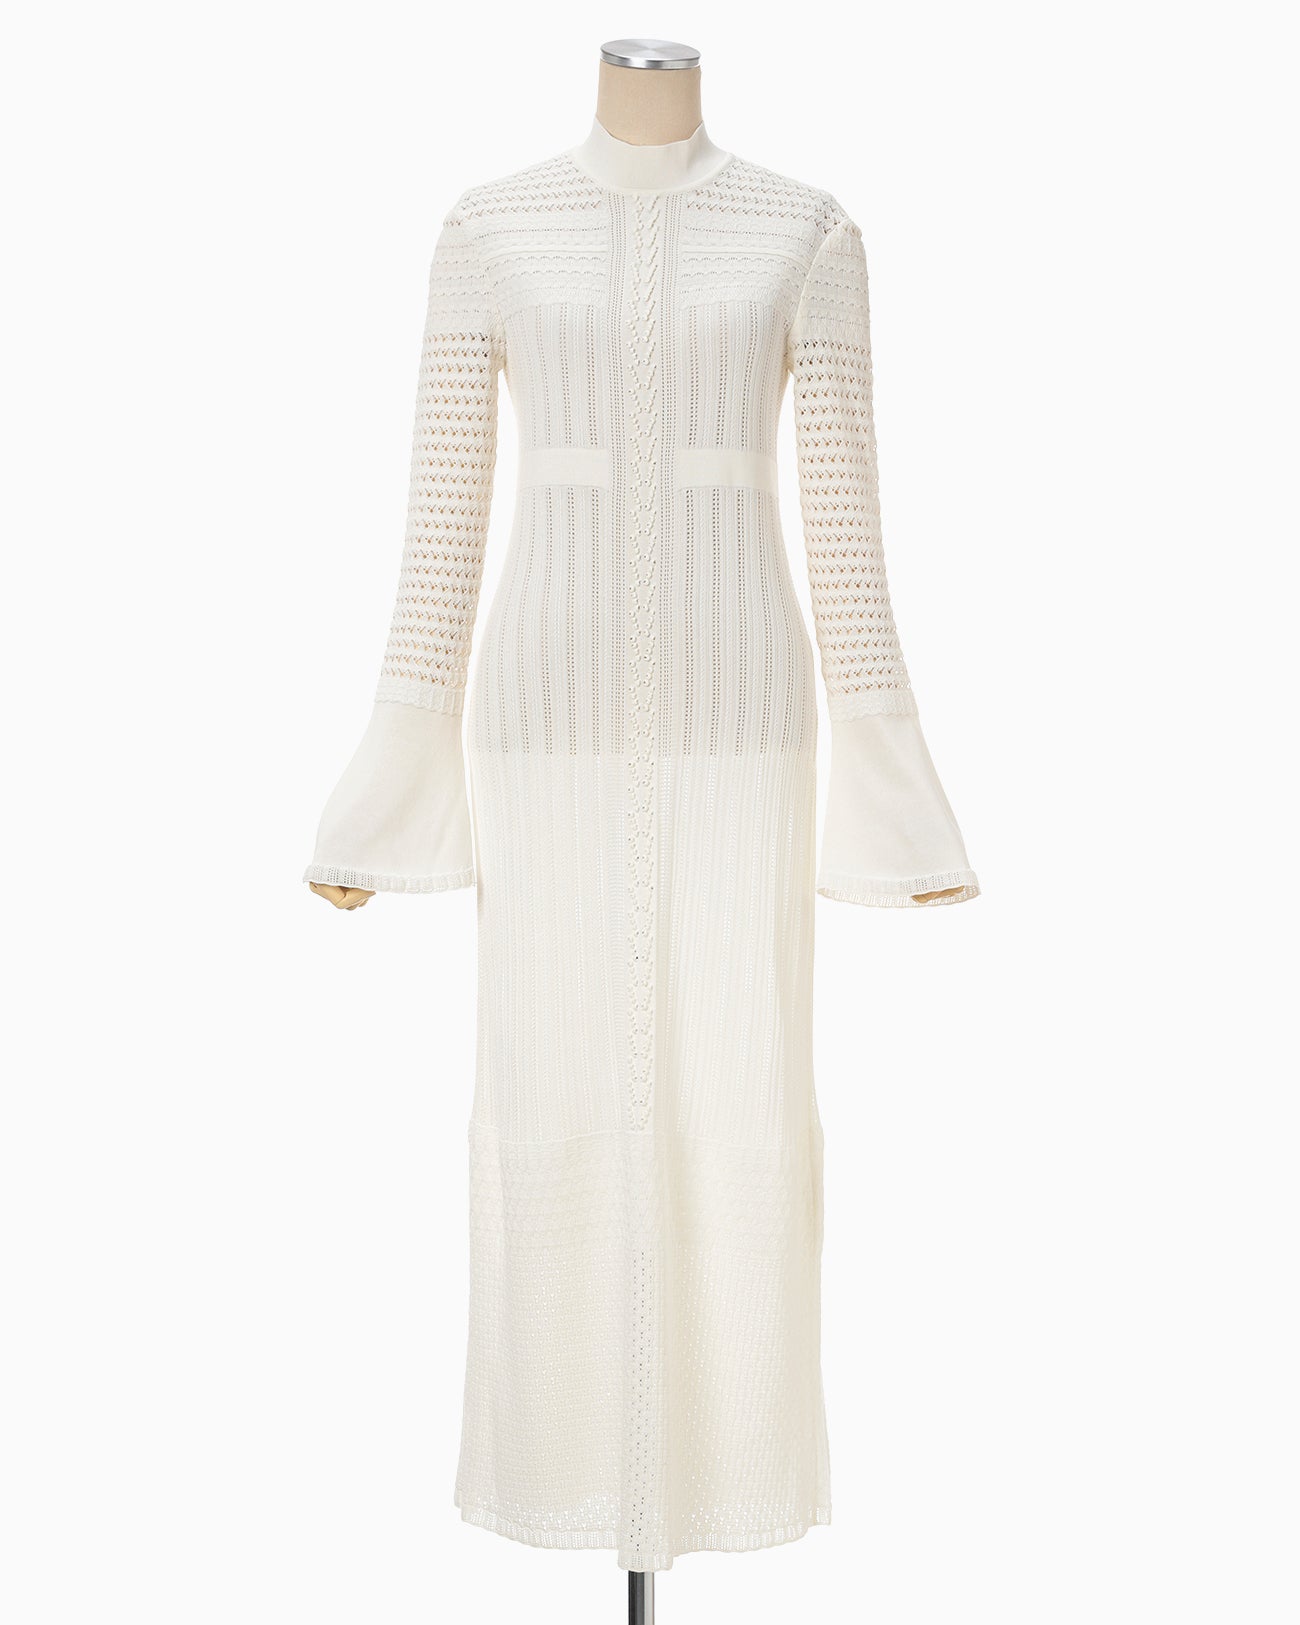 Lace Stripe Knitted Dress - white - Mame Kurogouchi